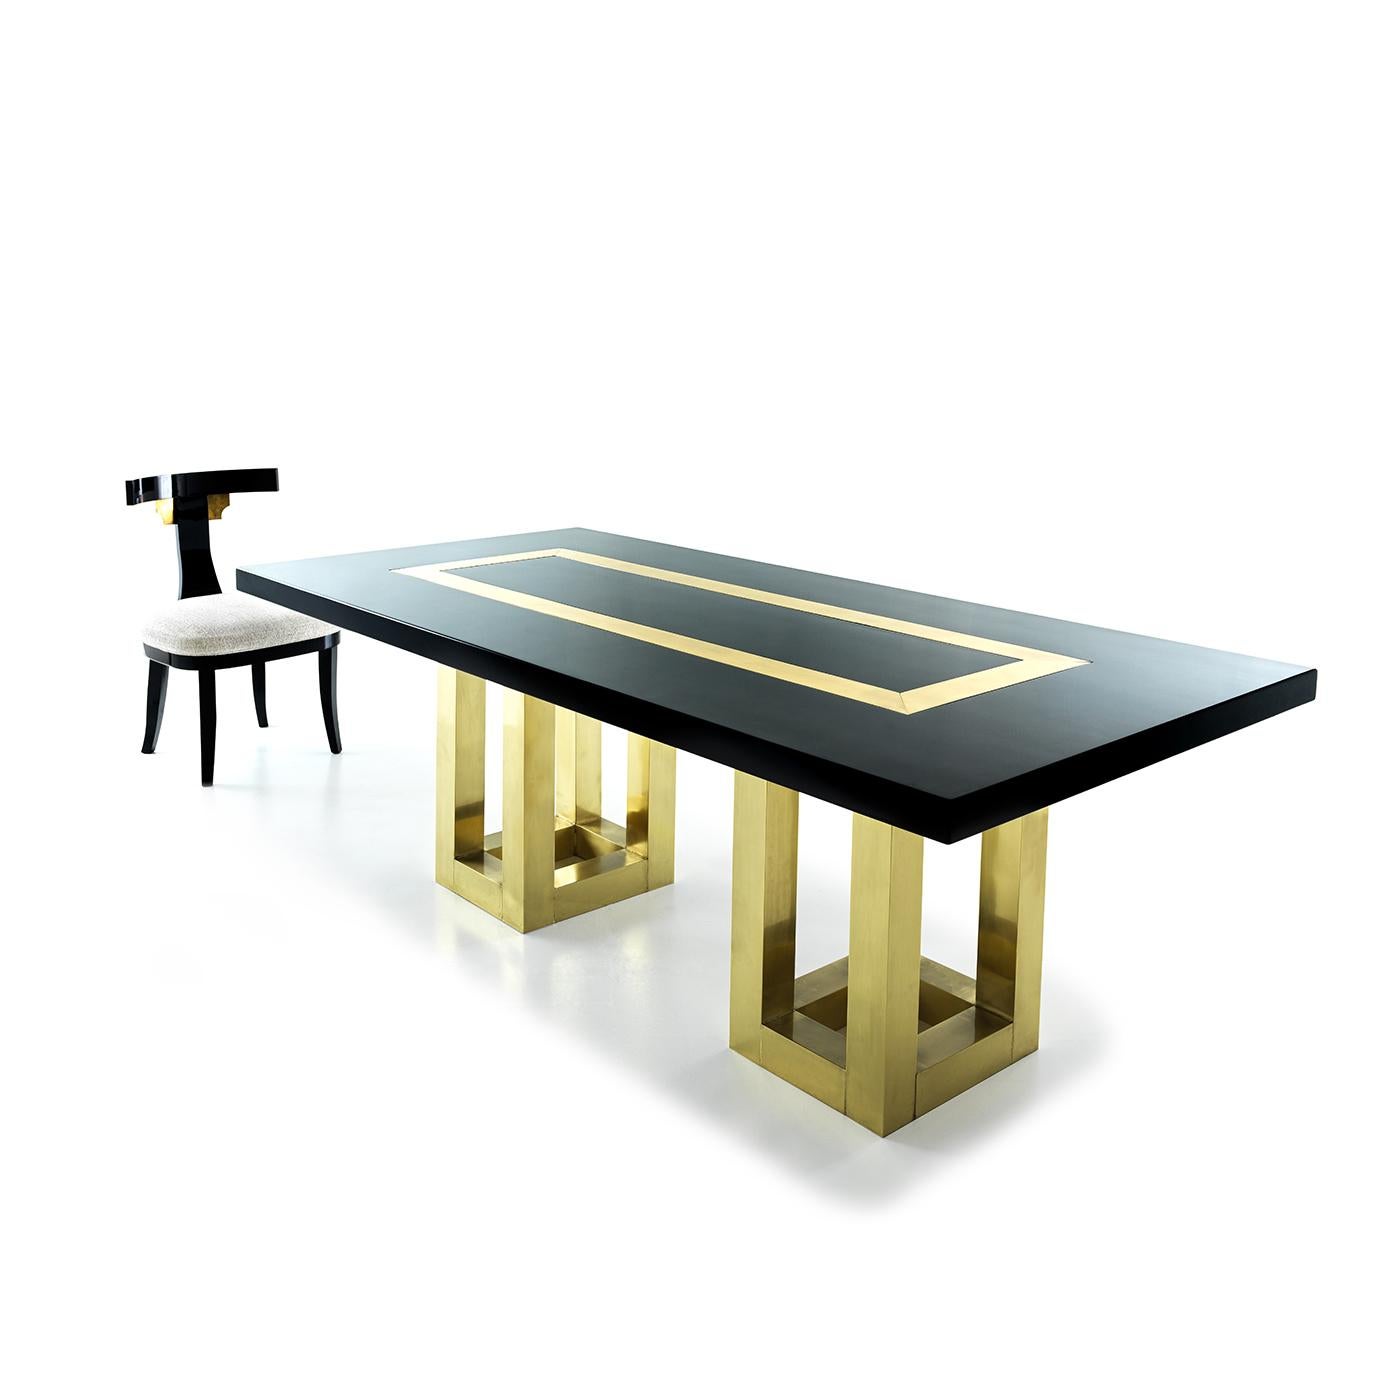 Der Tisch Atlas ist ein ausgefallenes Stück, das aus einer eleganten, schwarz lackierten Holzplatte mit Messingintarsien besteht, die von einem Paar lackierter Beine aus natürlichem Messing getragen wird. Es handelt sich um ein wirklich